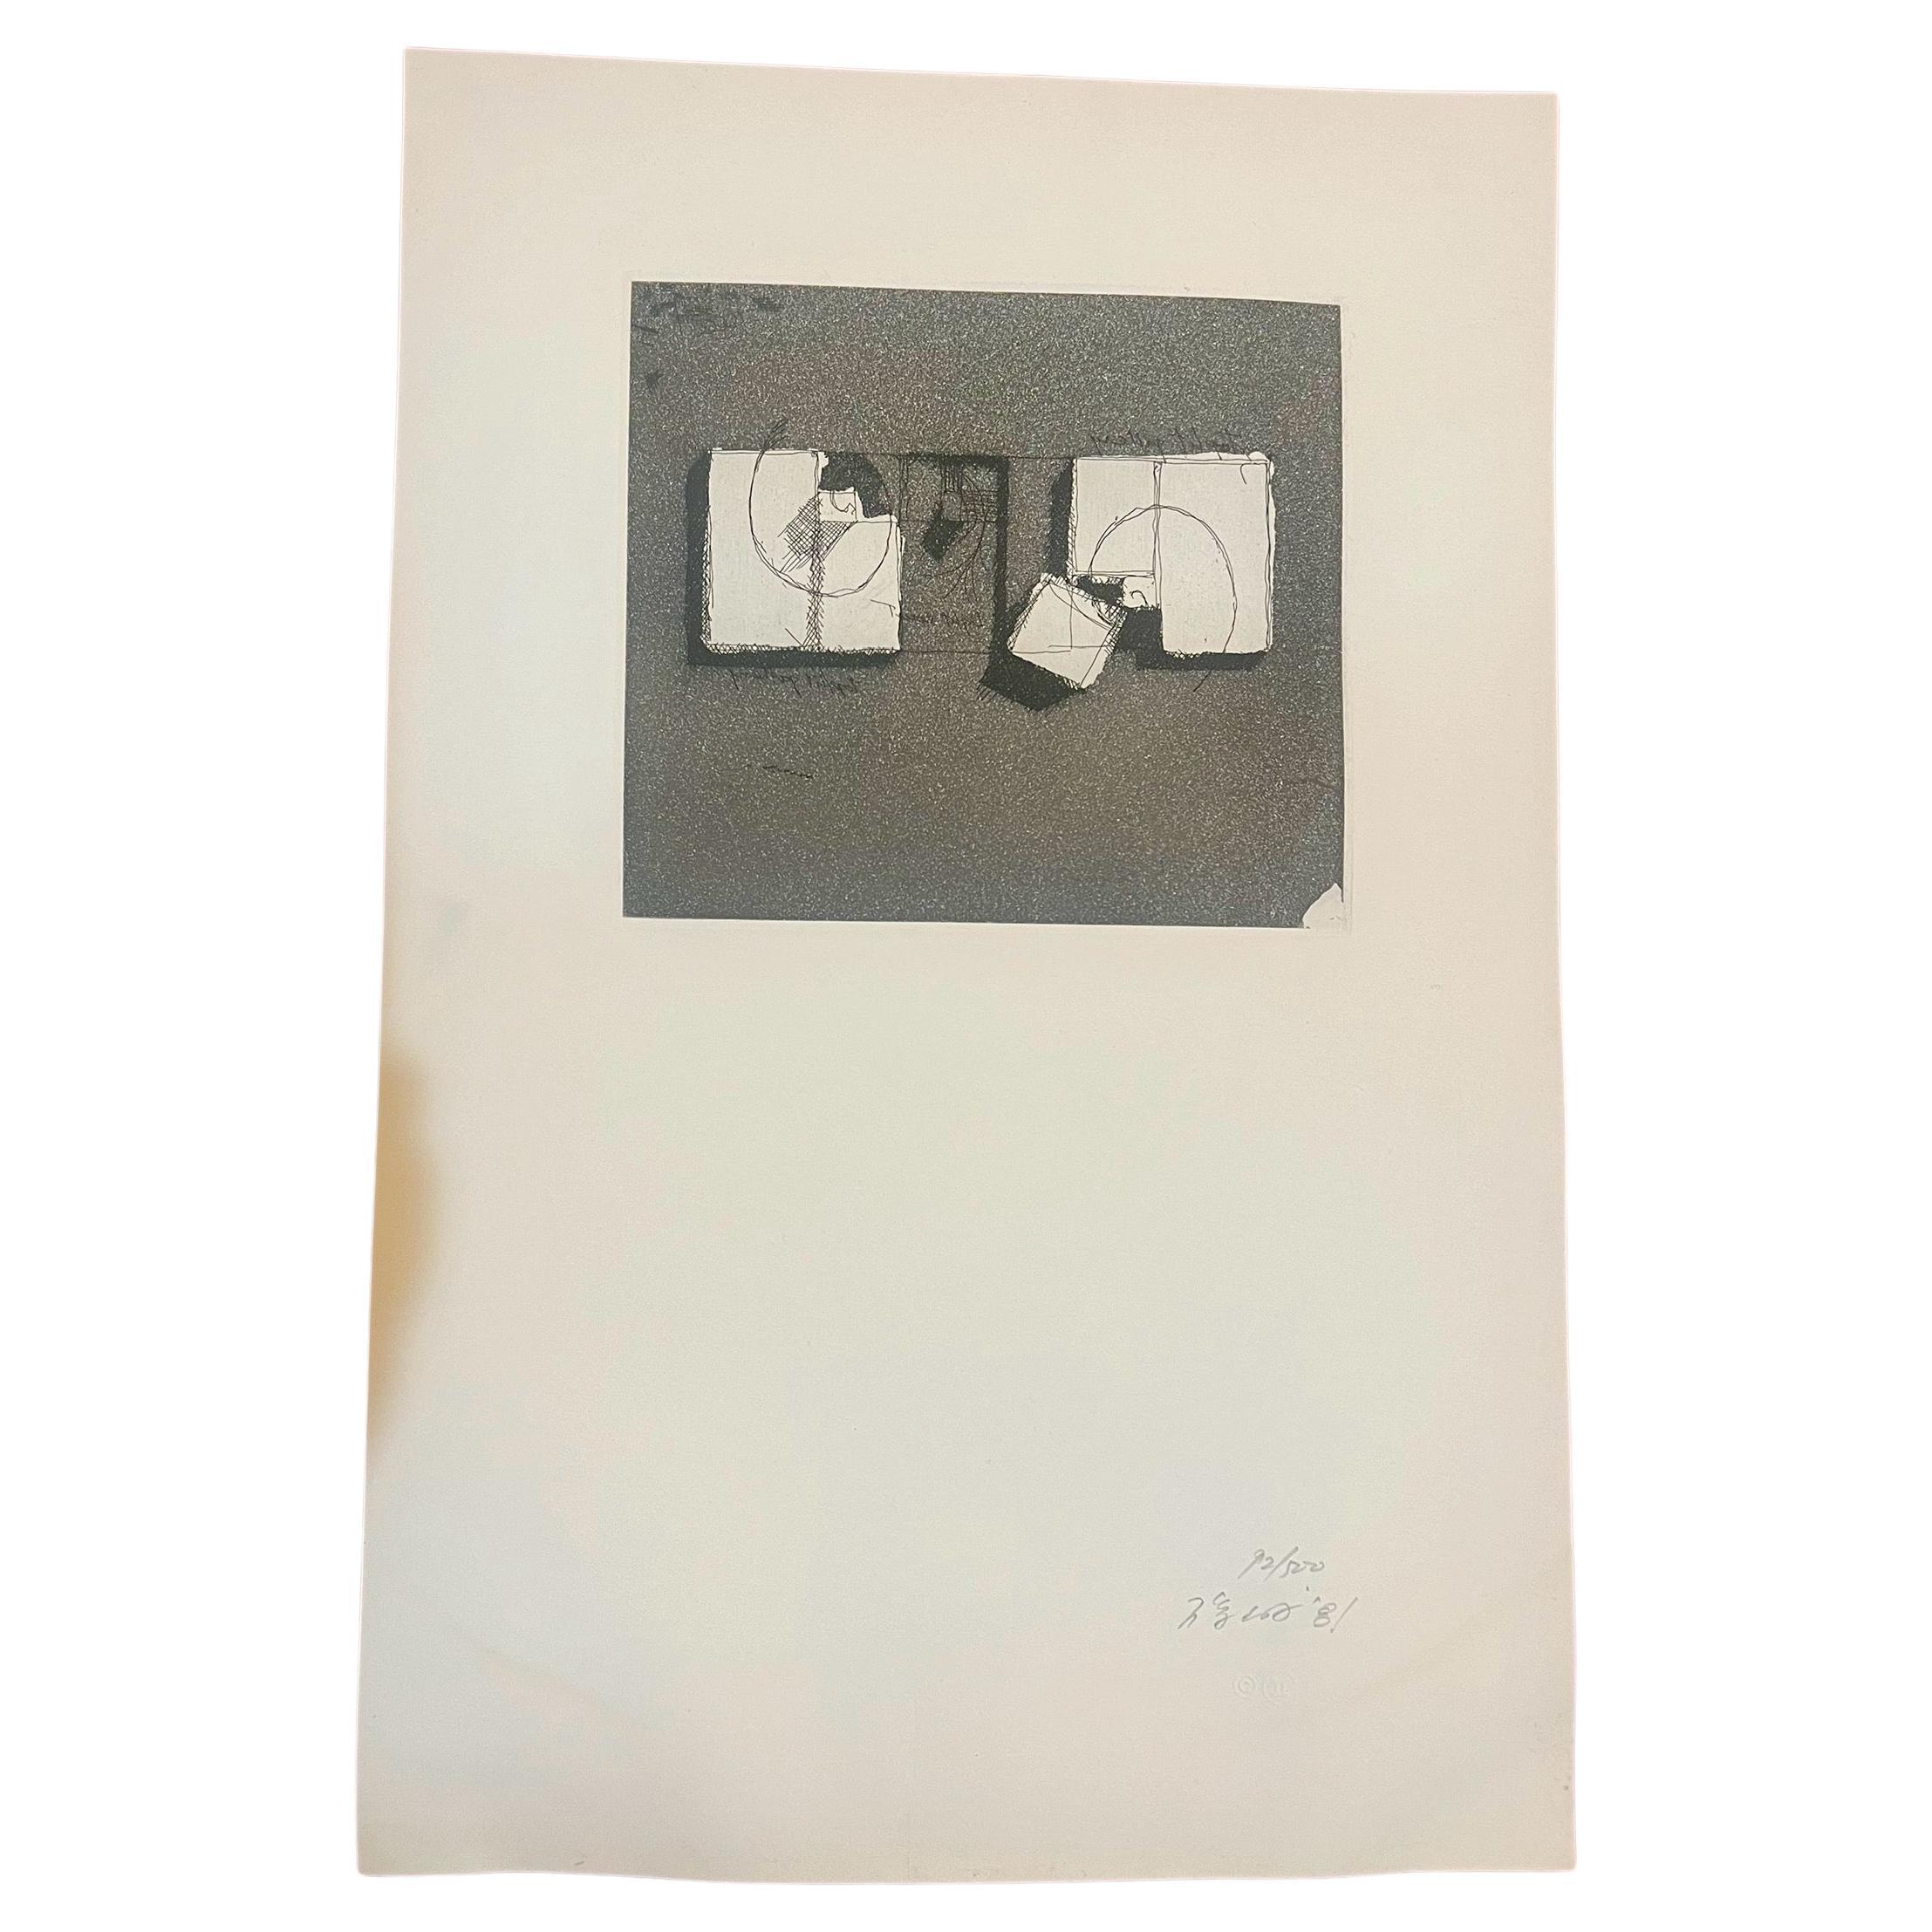 Une incroyable et rare gravure , aquatinte non encadrée de l'architecte Arat Isozaki , circa 1981 , belle pièce d'art minimaliste , signée numérotée et datée sur papier embossé très bon état propre . beau papier imprimé artiste listé avec de